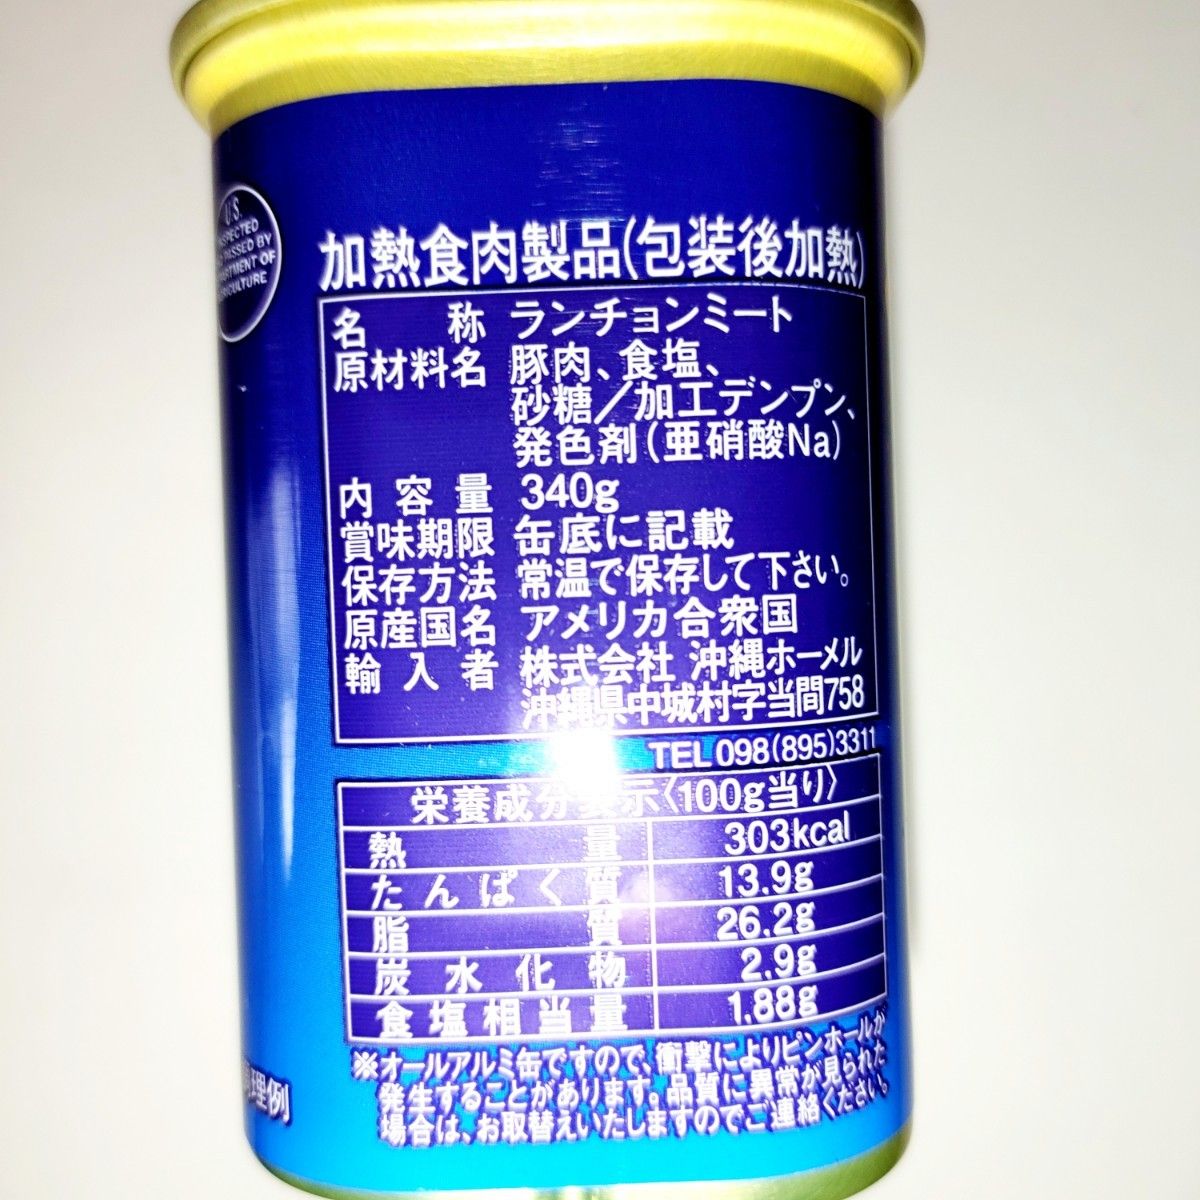 ★アメリカ★　沖縄ホーメル　ランチョンミート　スパム　減塩　6缶